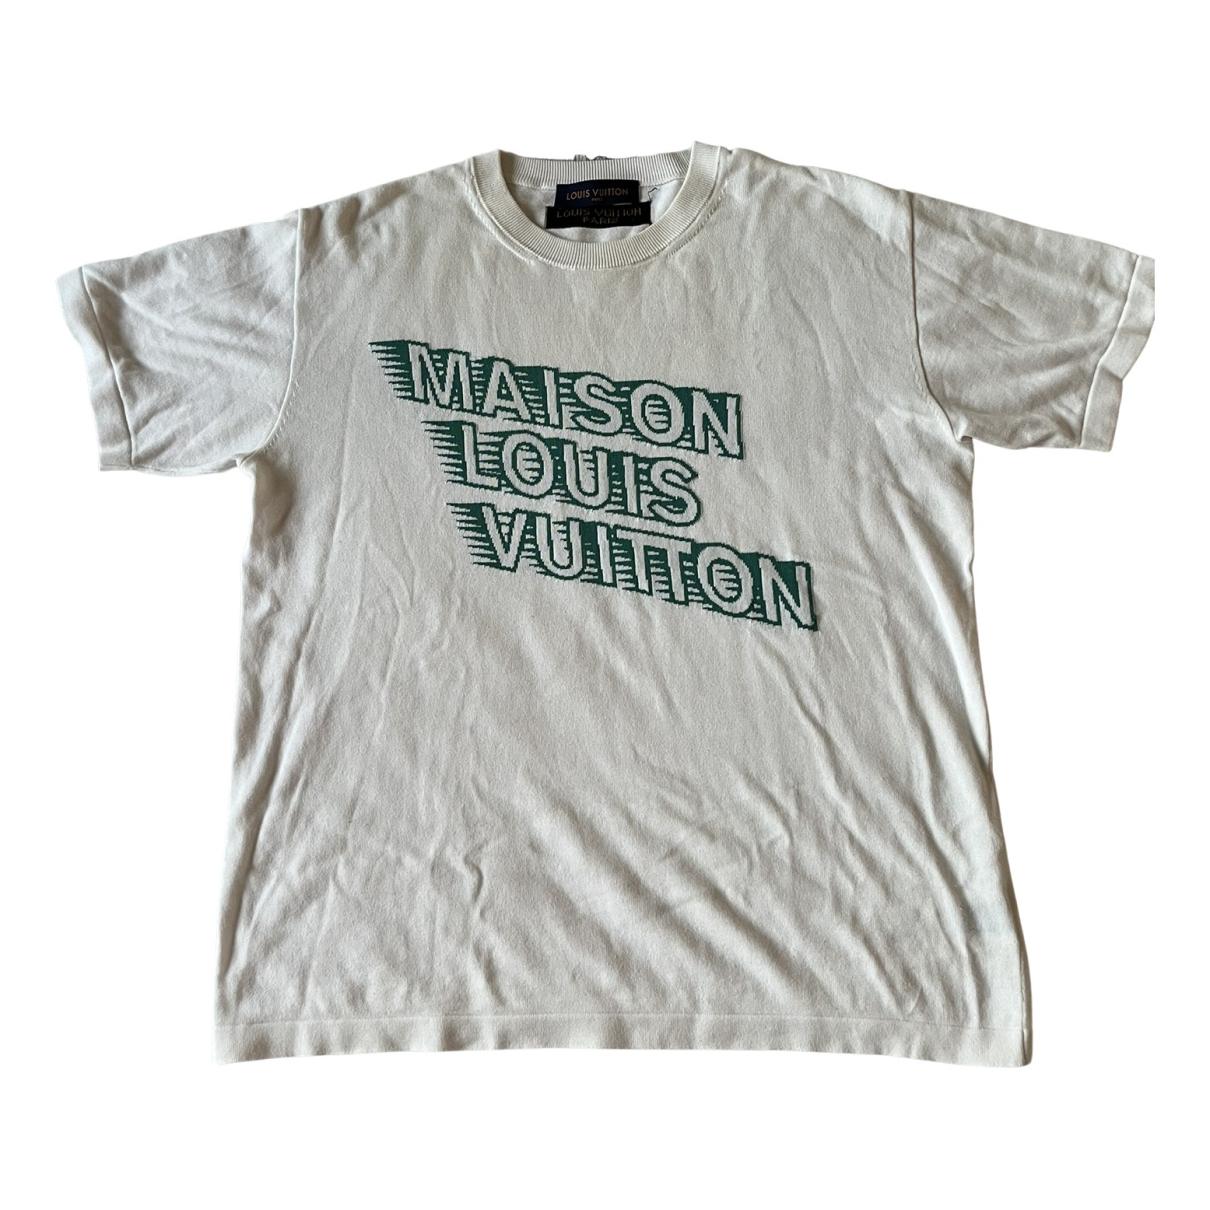 Shop Louis Vuitton Men's Shirts